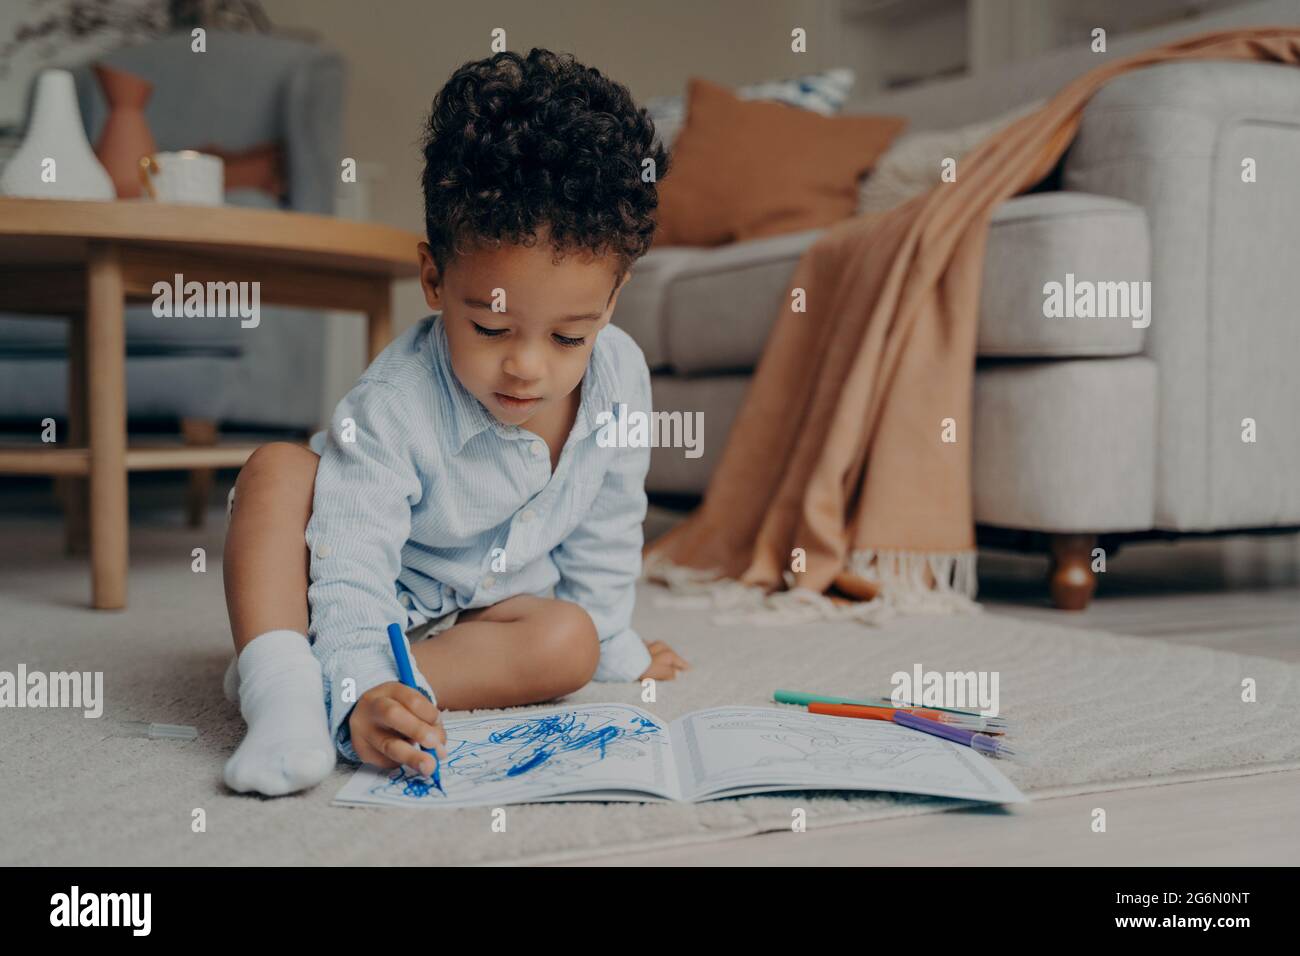 Piccolo bambino africano seduto sul pavimento e disegnando con penna blu con punta in feltro Foto Stock